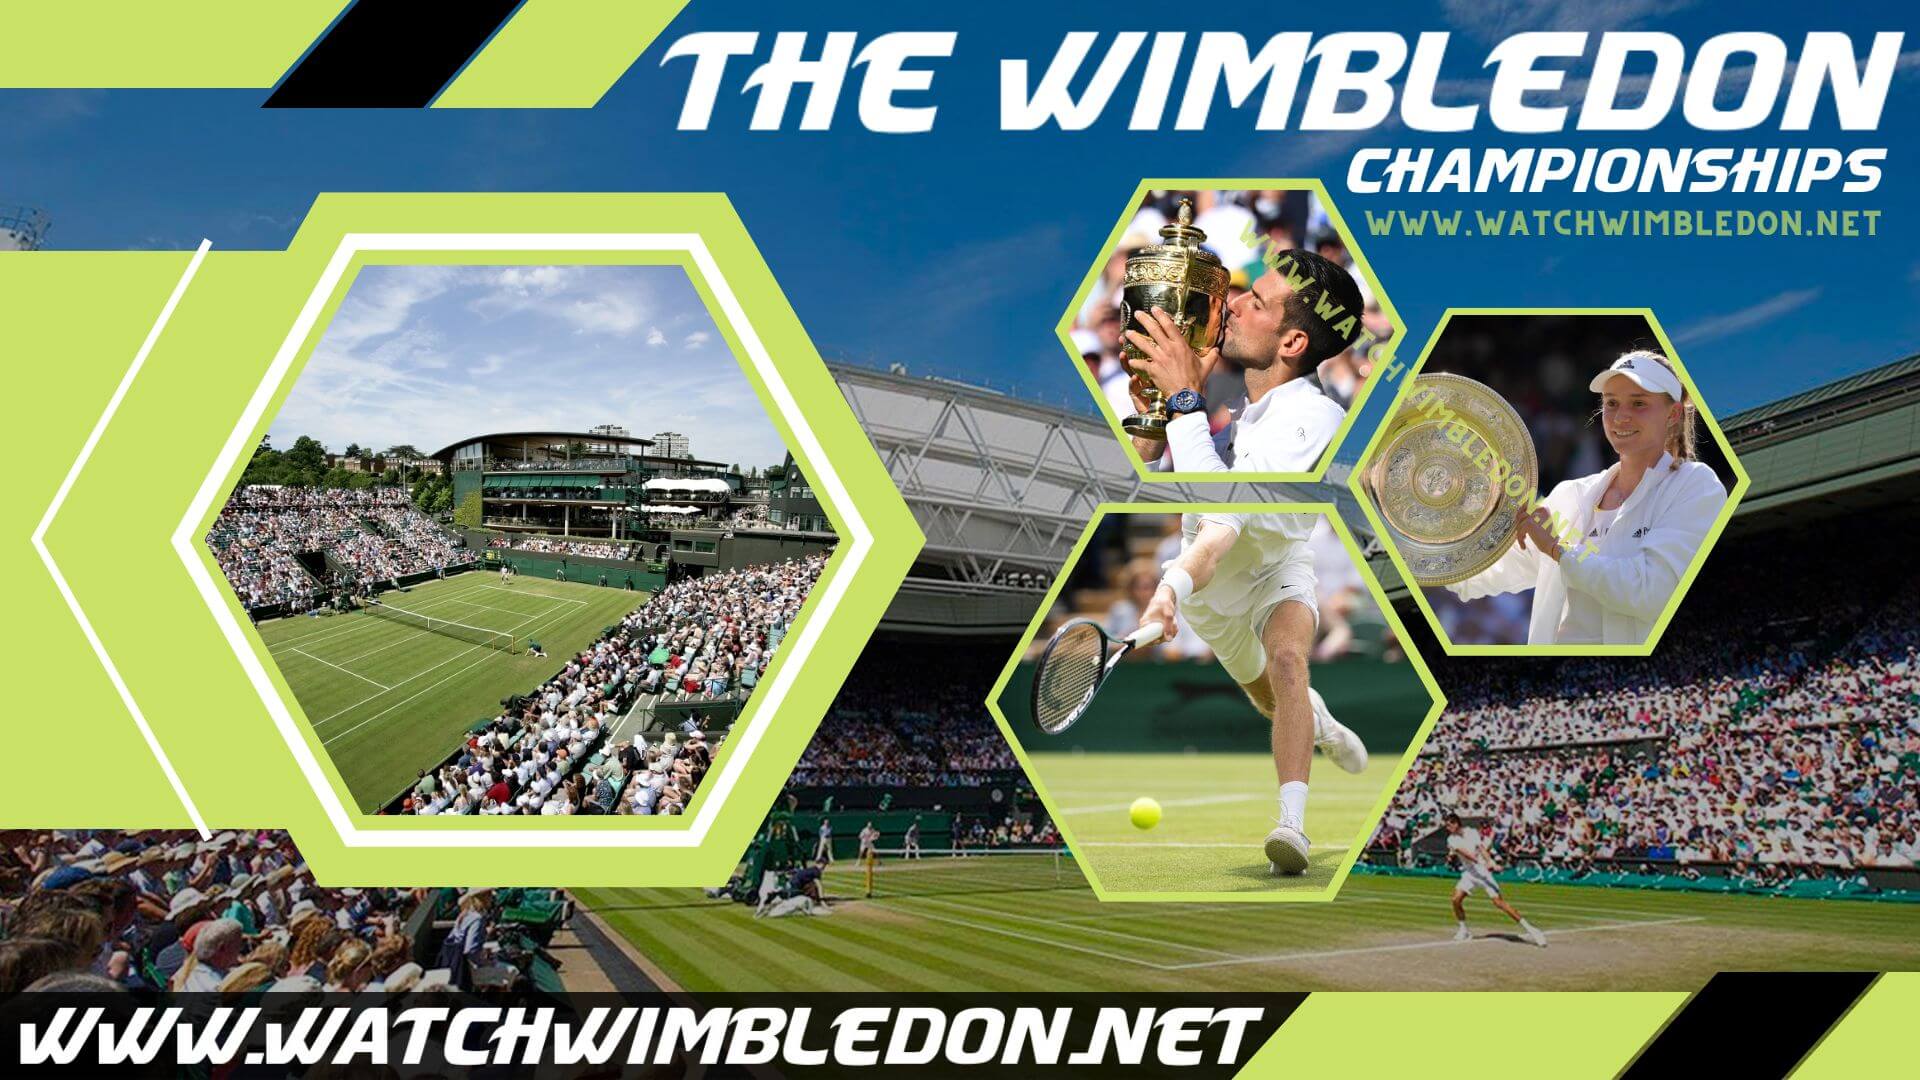 The Championships Wimbledon